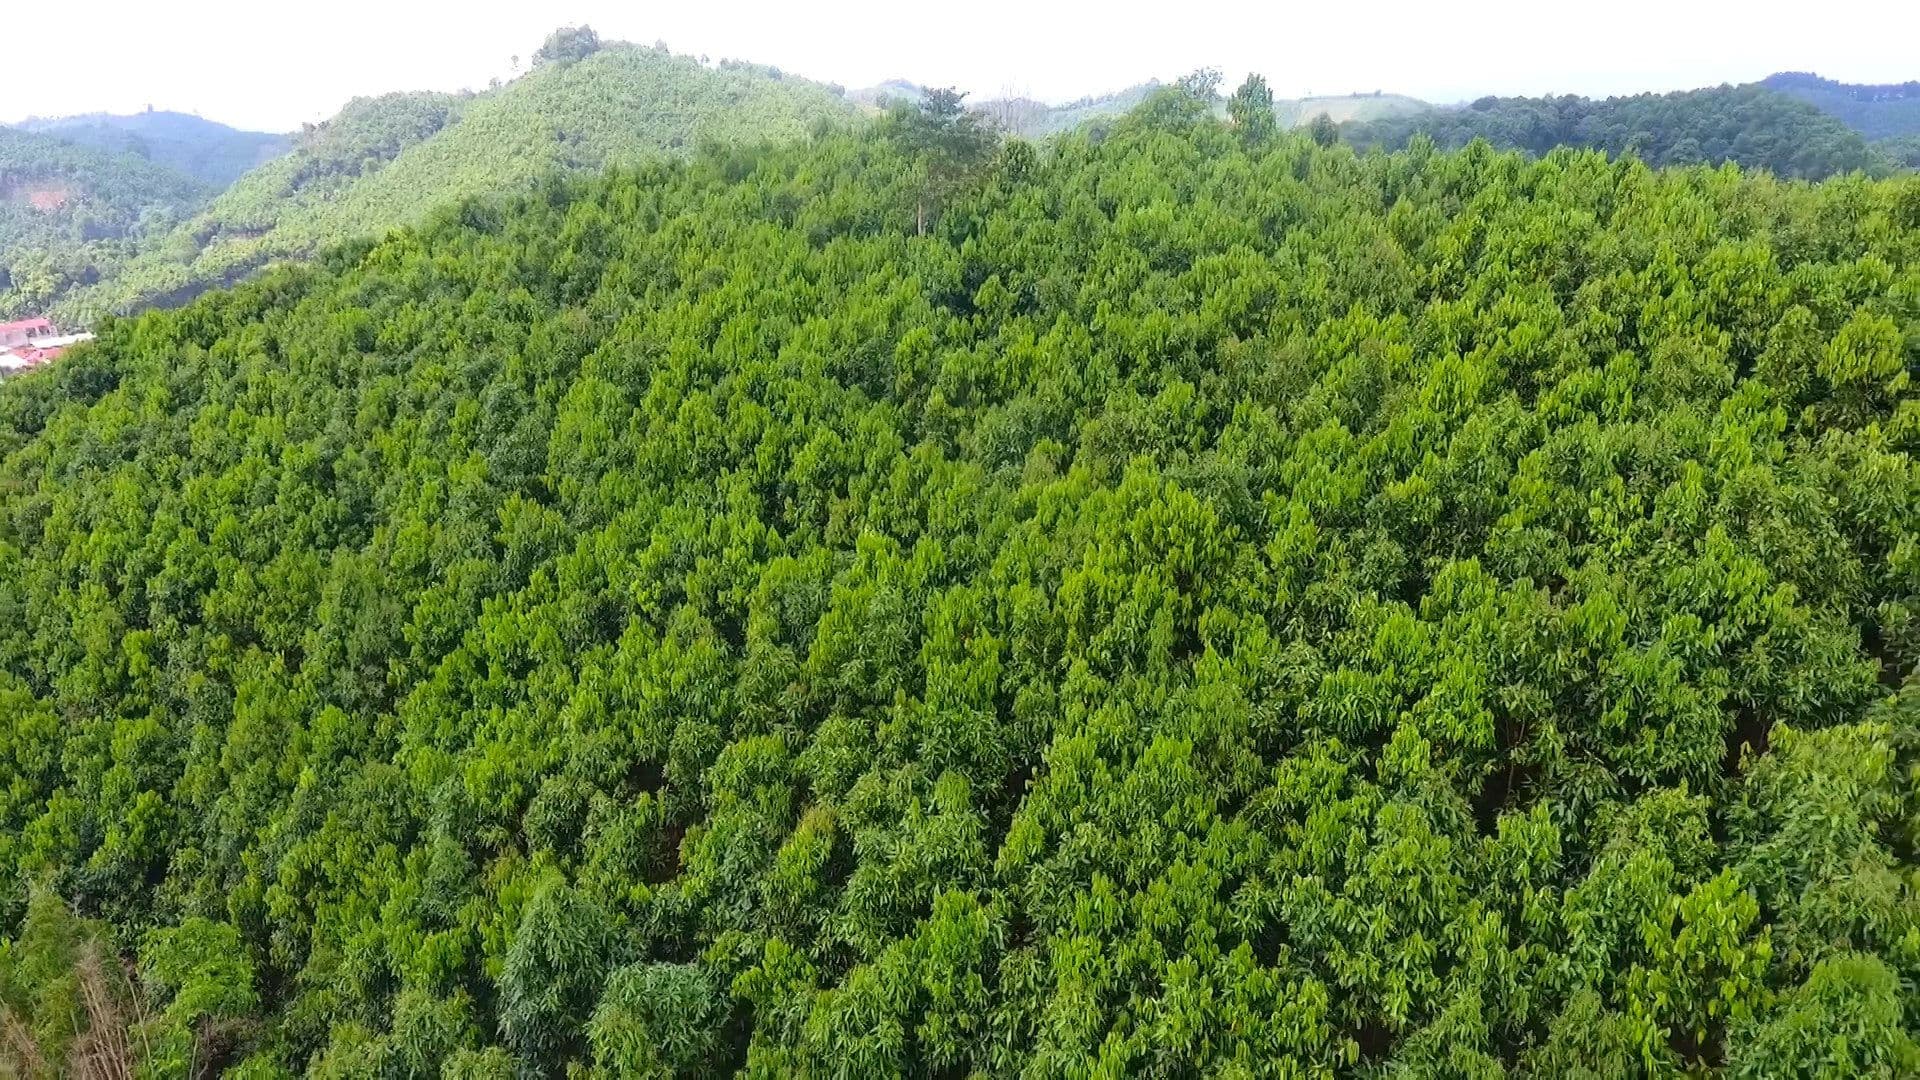 Pháp luật quy định như thế nào về đất rừng đặc dụng